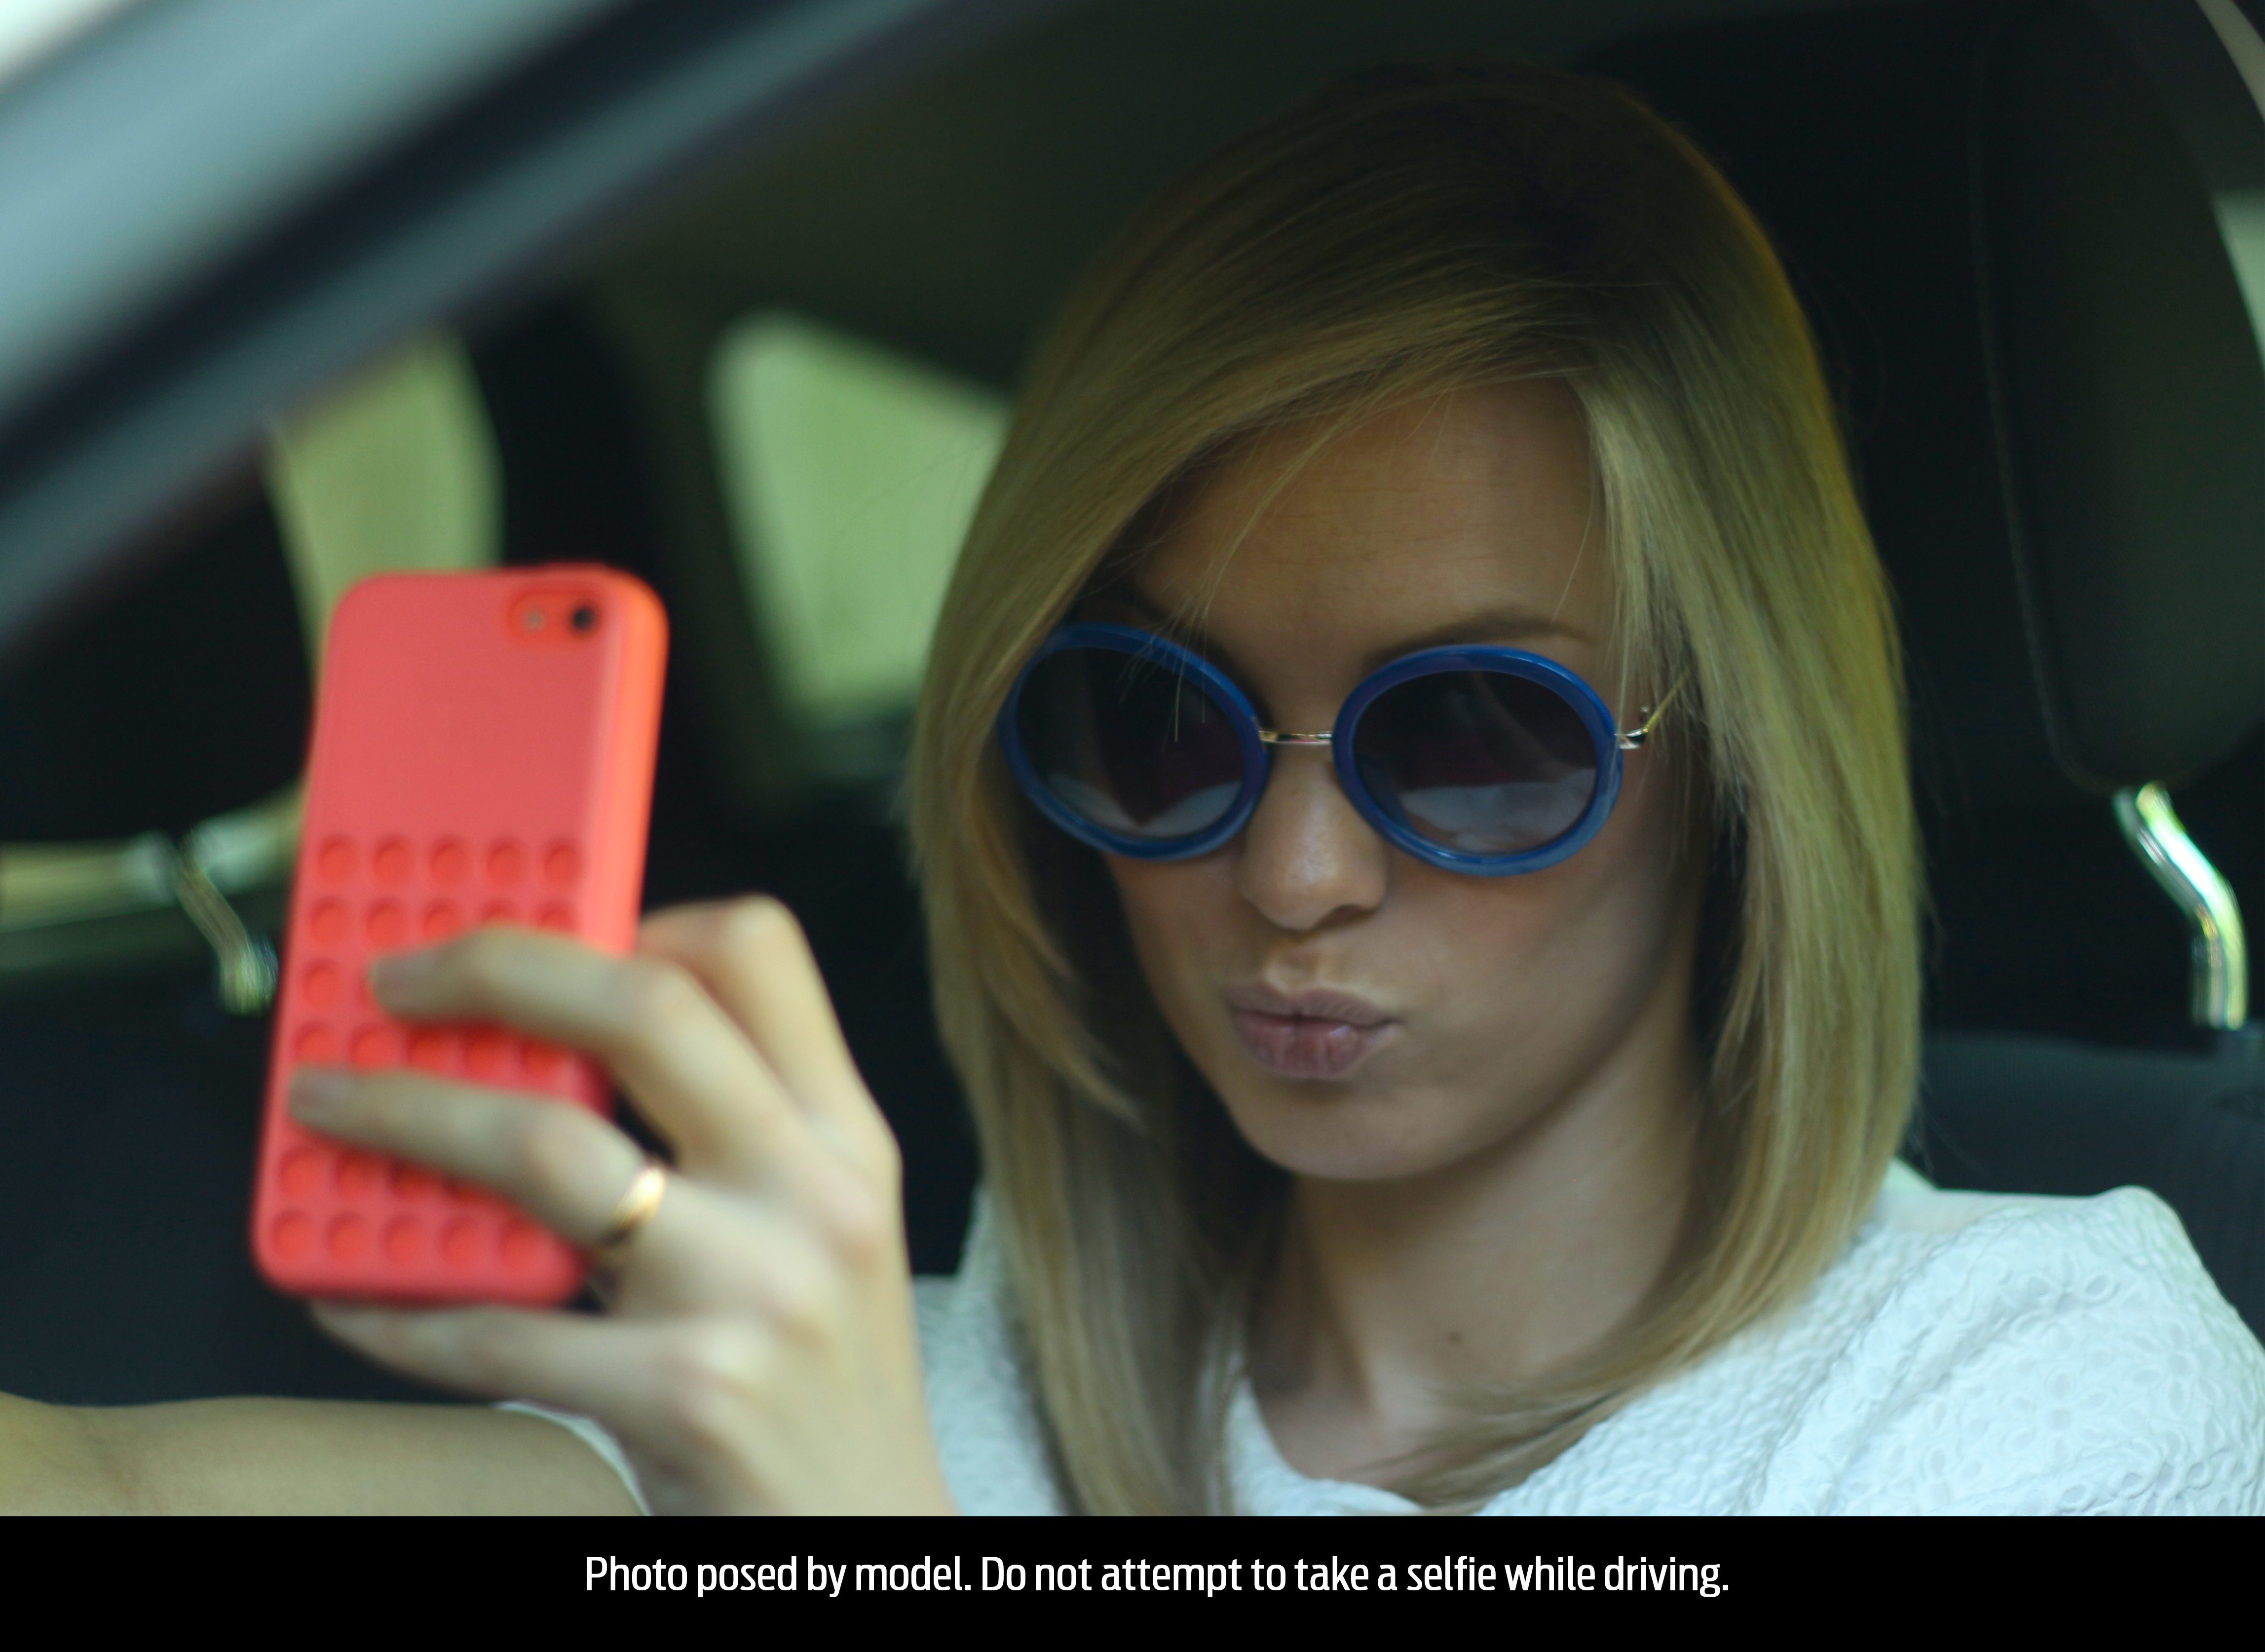  Un giovane su 4 scatta “selfie” durante la guida